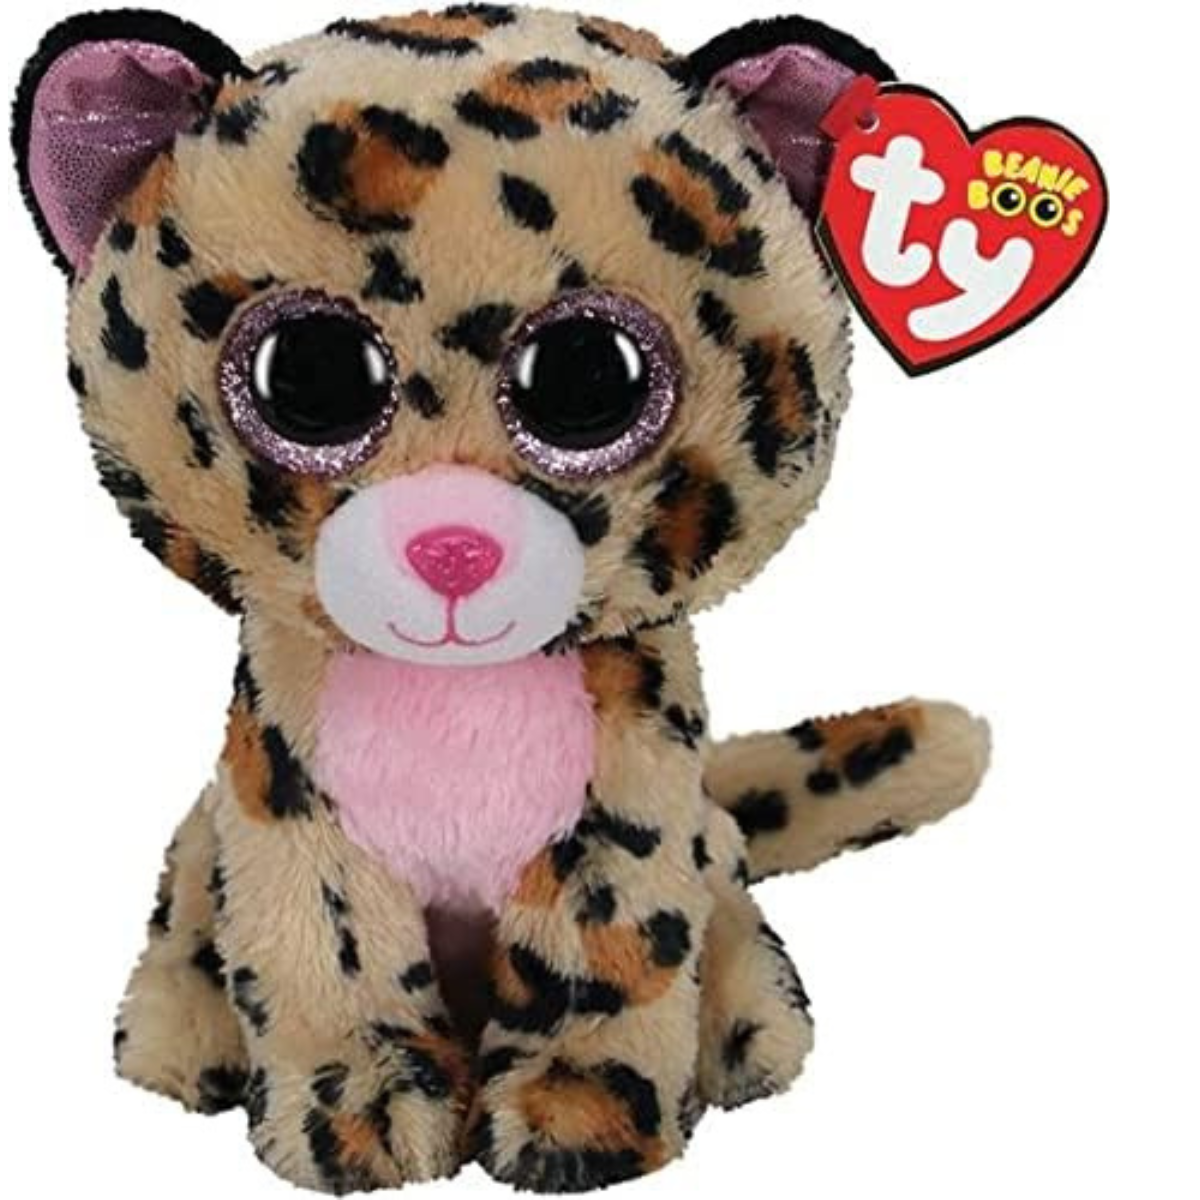 Ty - peluche - beanie boos - leopardo - livvie - marrone e nero - occhioni e orecchie rosa glitter - il peluche con gli occhi grandi scintillanti - 15 cm - 36367 - TY